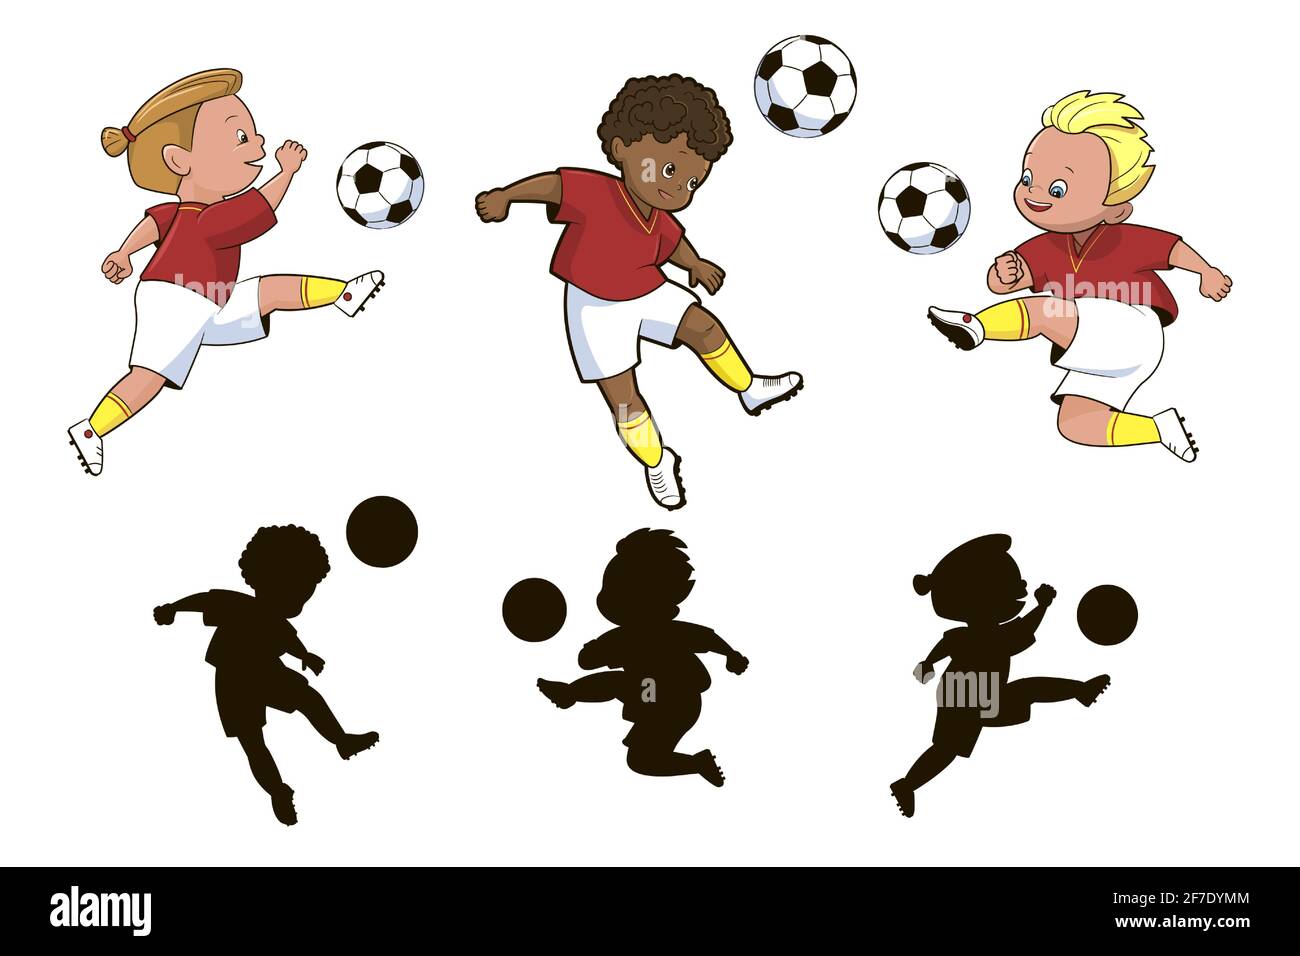 Trova il corretto shadow.an gioco educativo per i bambini sul Tema di sport, i giocatori di calcio ragazzi calciare una palla di calcio.illustrazione vettoriale nel cartoo Illustrazione Vettoriale